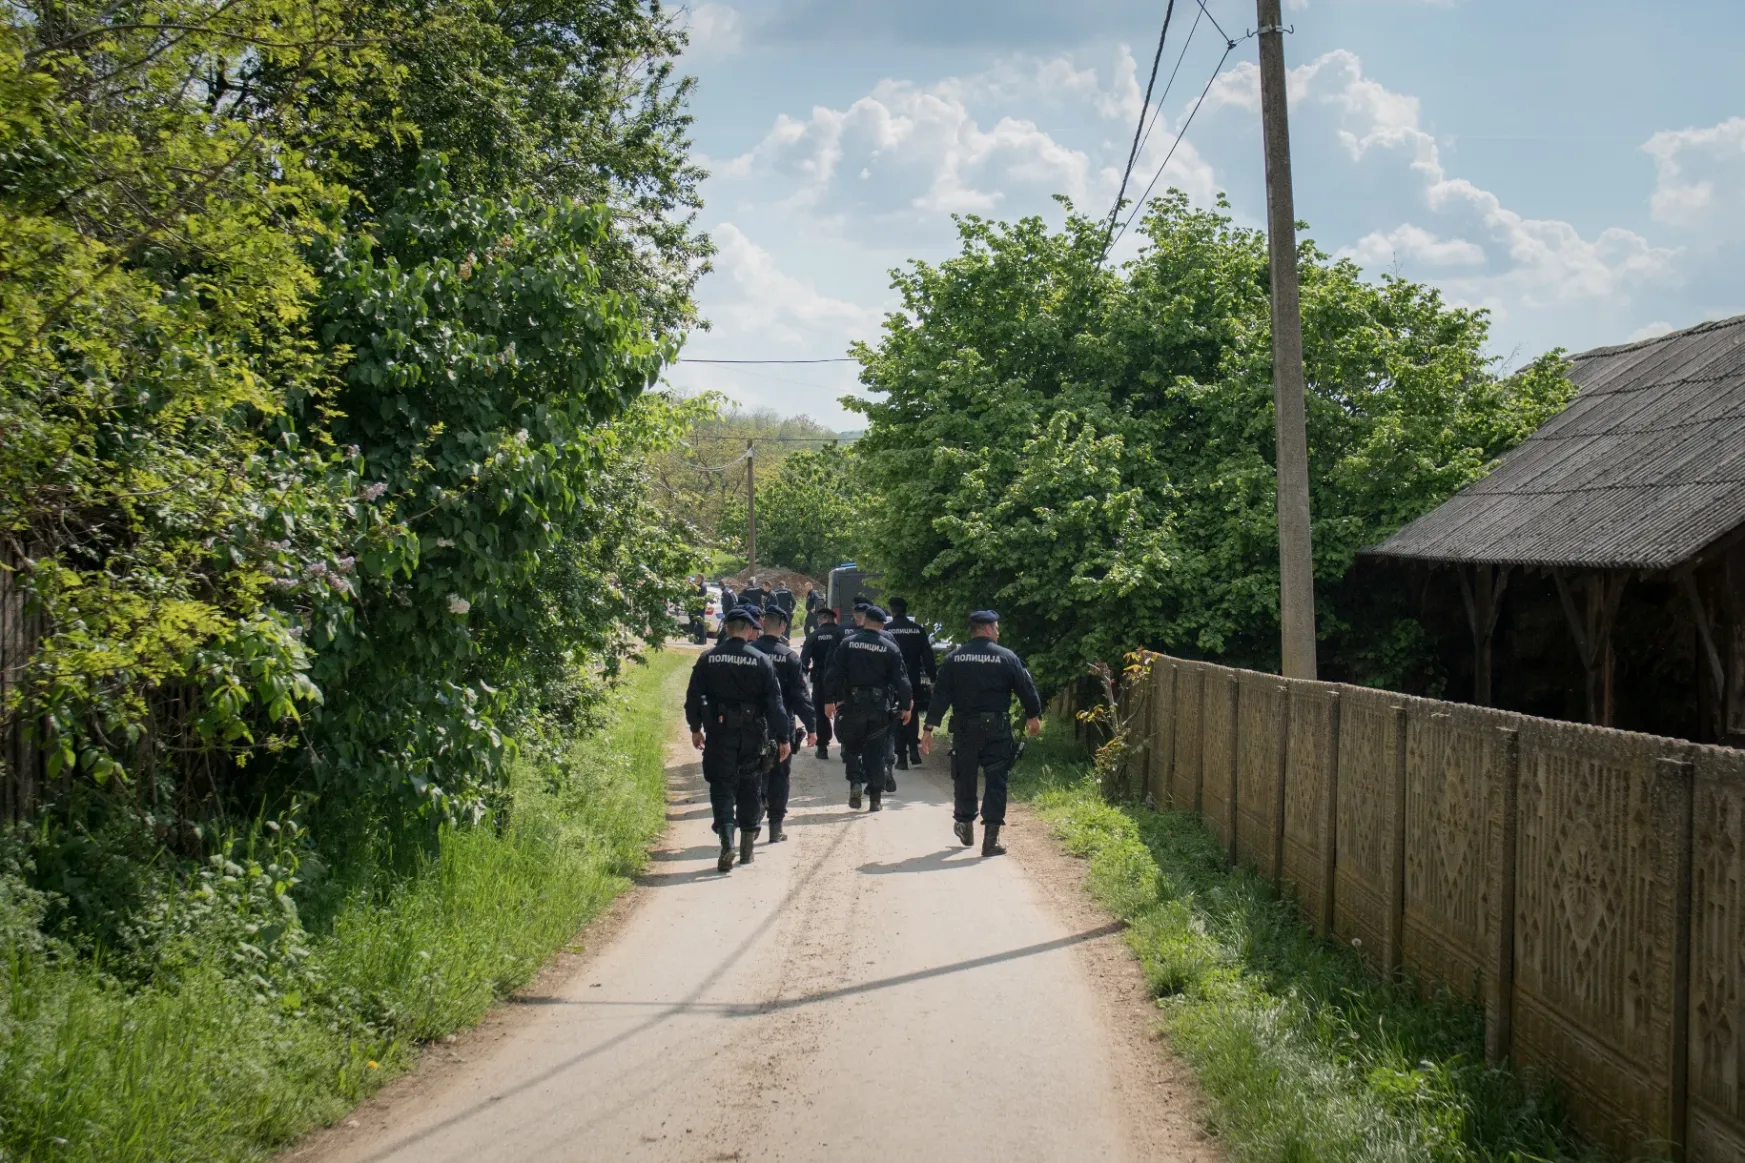 Éjfél előtt kezdődött a mészárlás Szerbiában, a gyilkos három faluban lőtt válogatás nélkül az emberekre